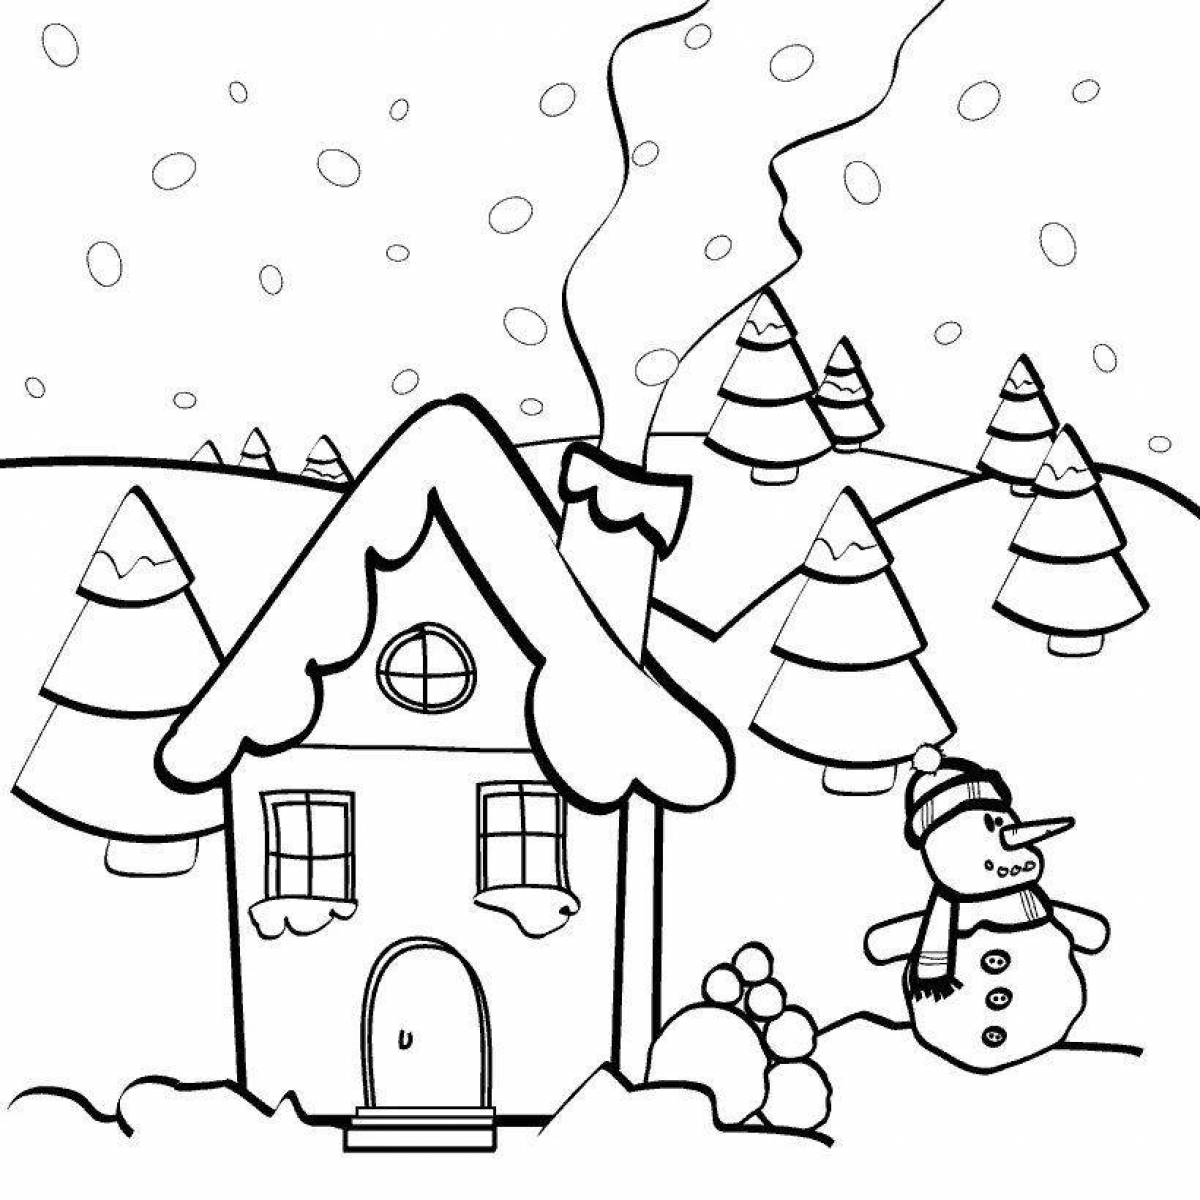 Snow house #2